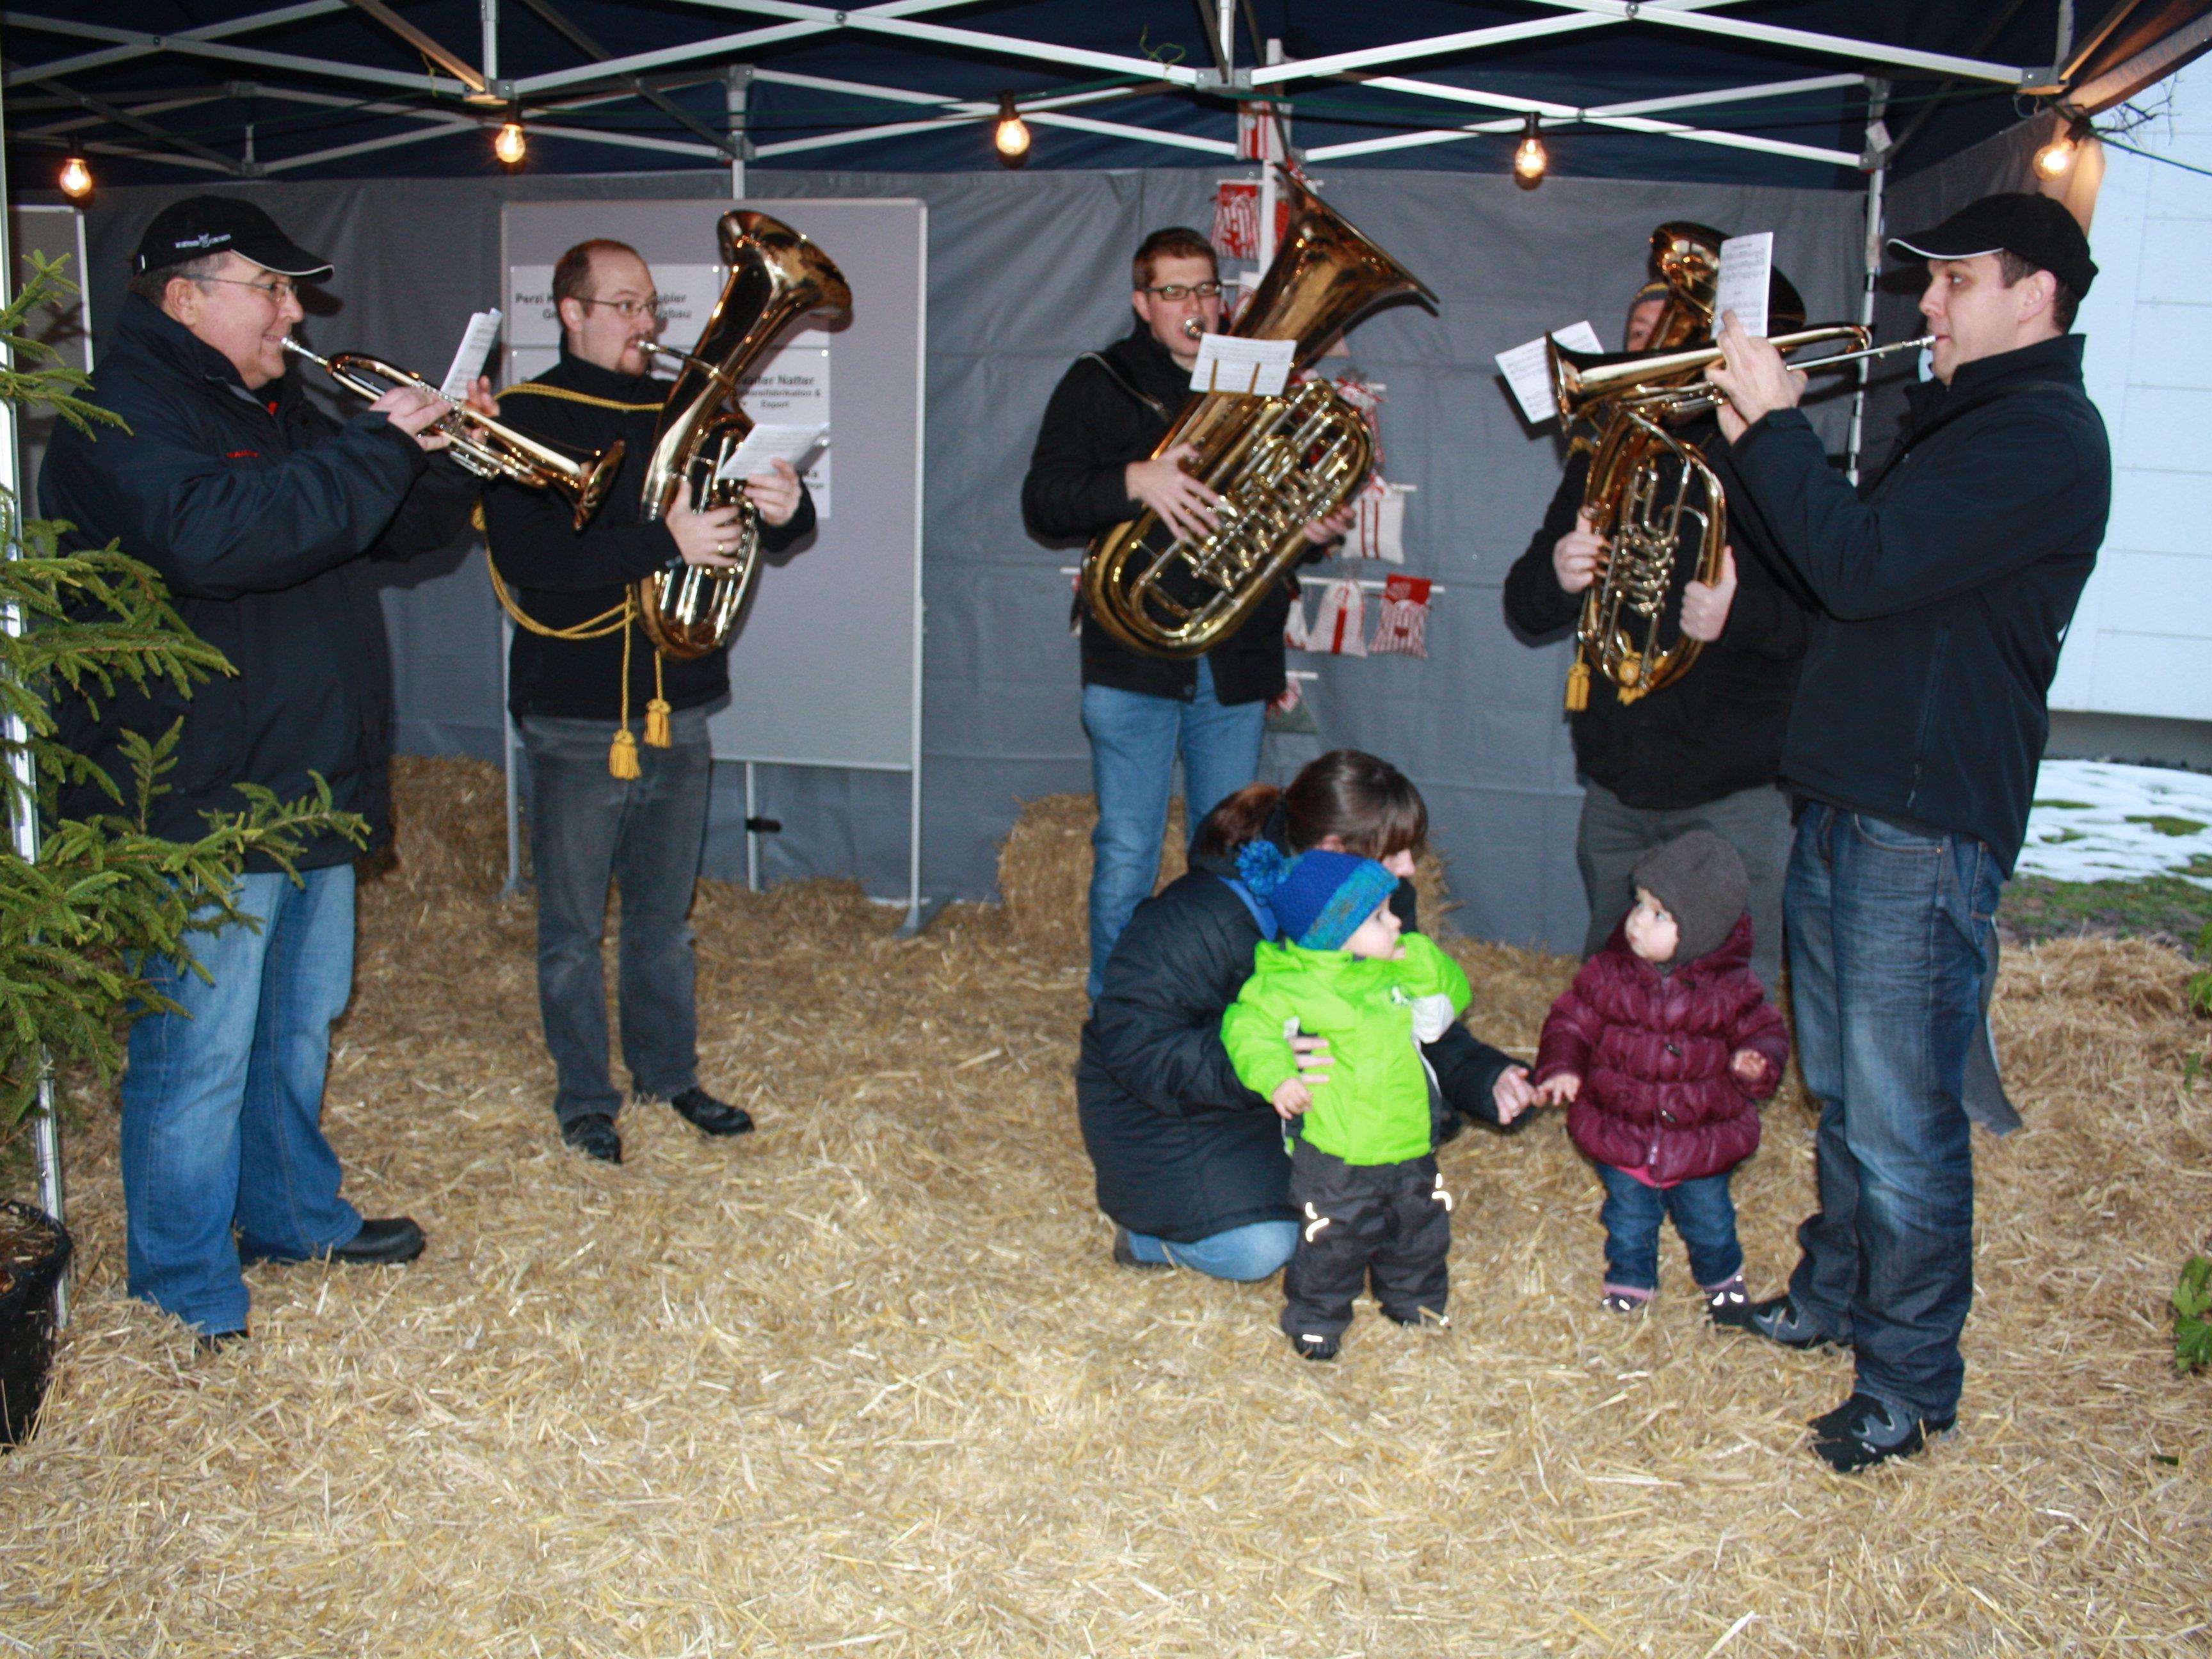 Mit vorweihnachtlichen Klängen stimmt das Bläserensemble des MV Concordia Lustenau die Besucher auf den Advent ein.